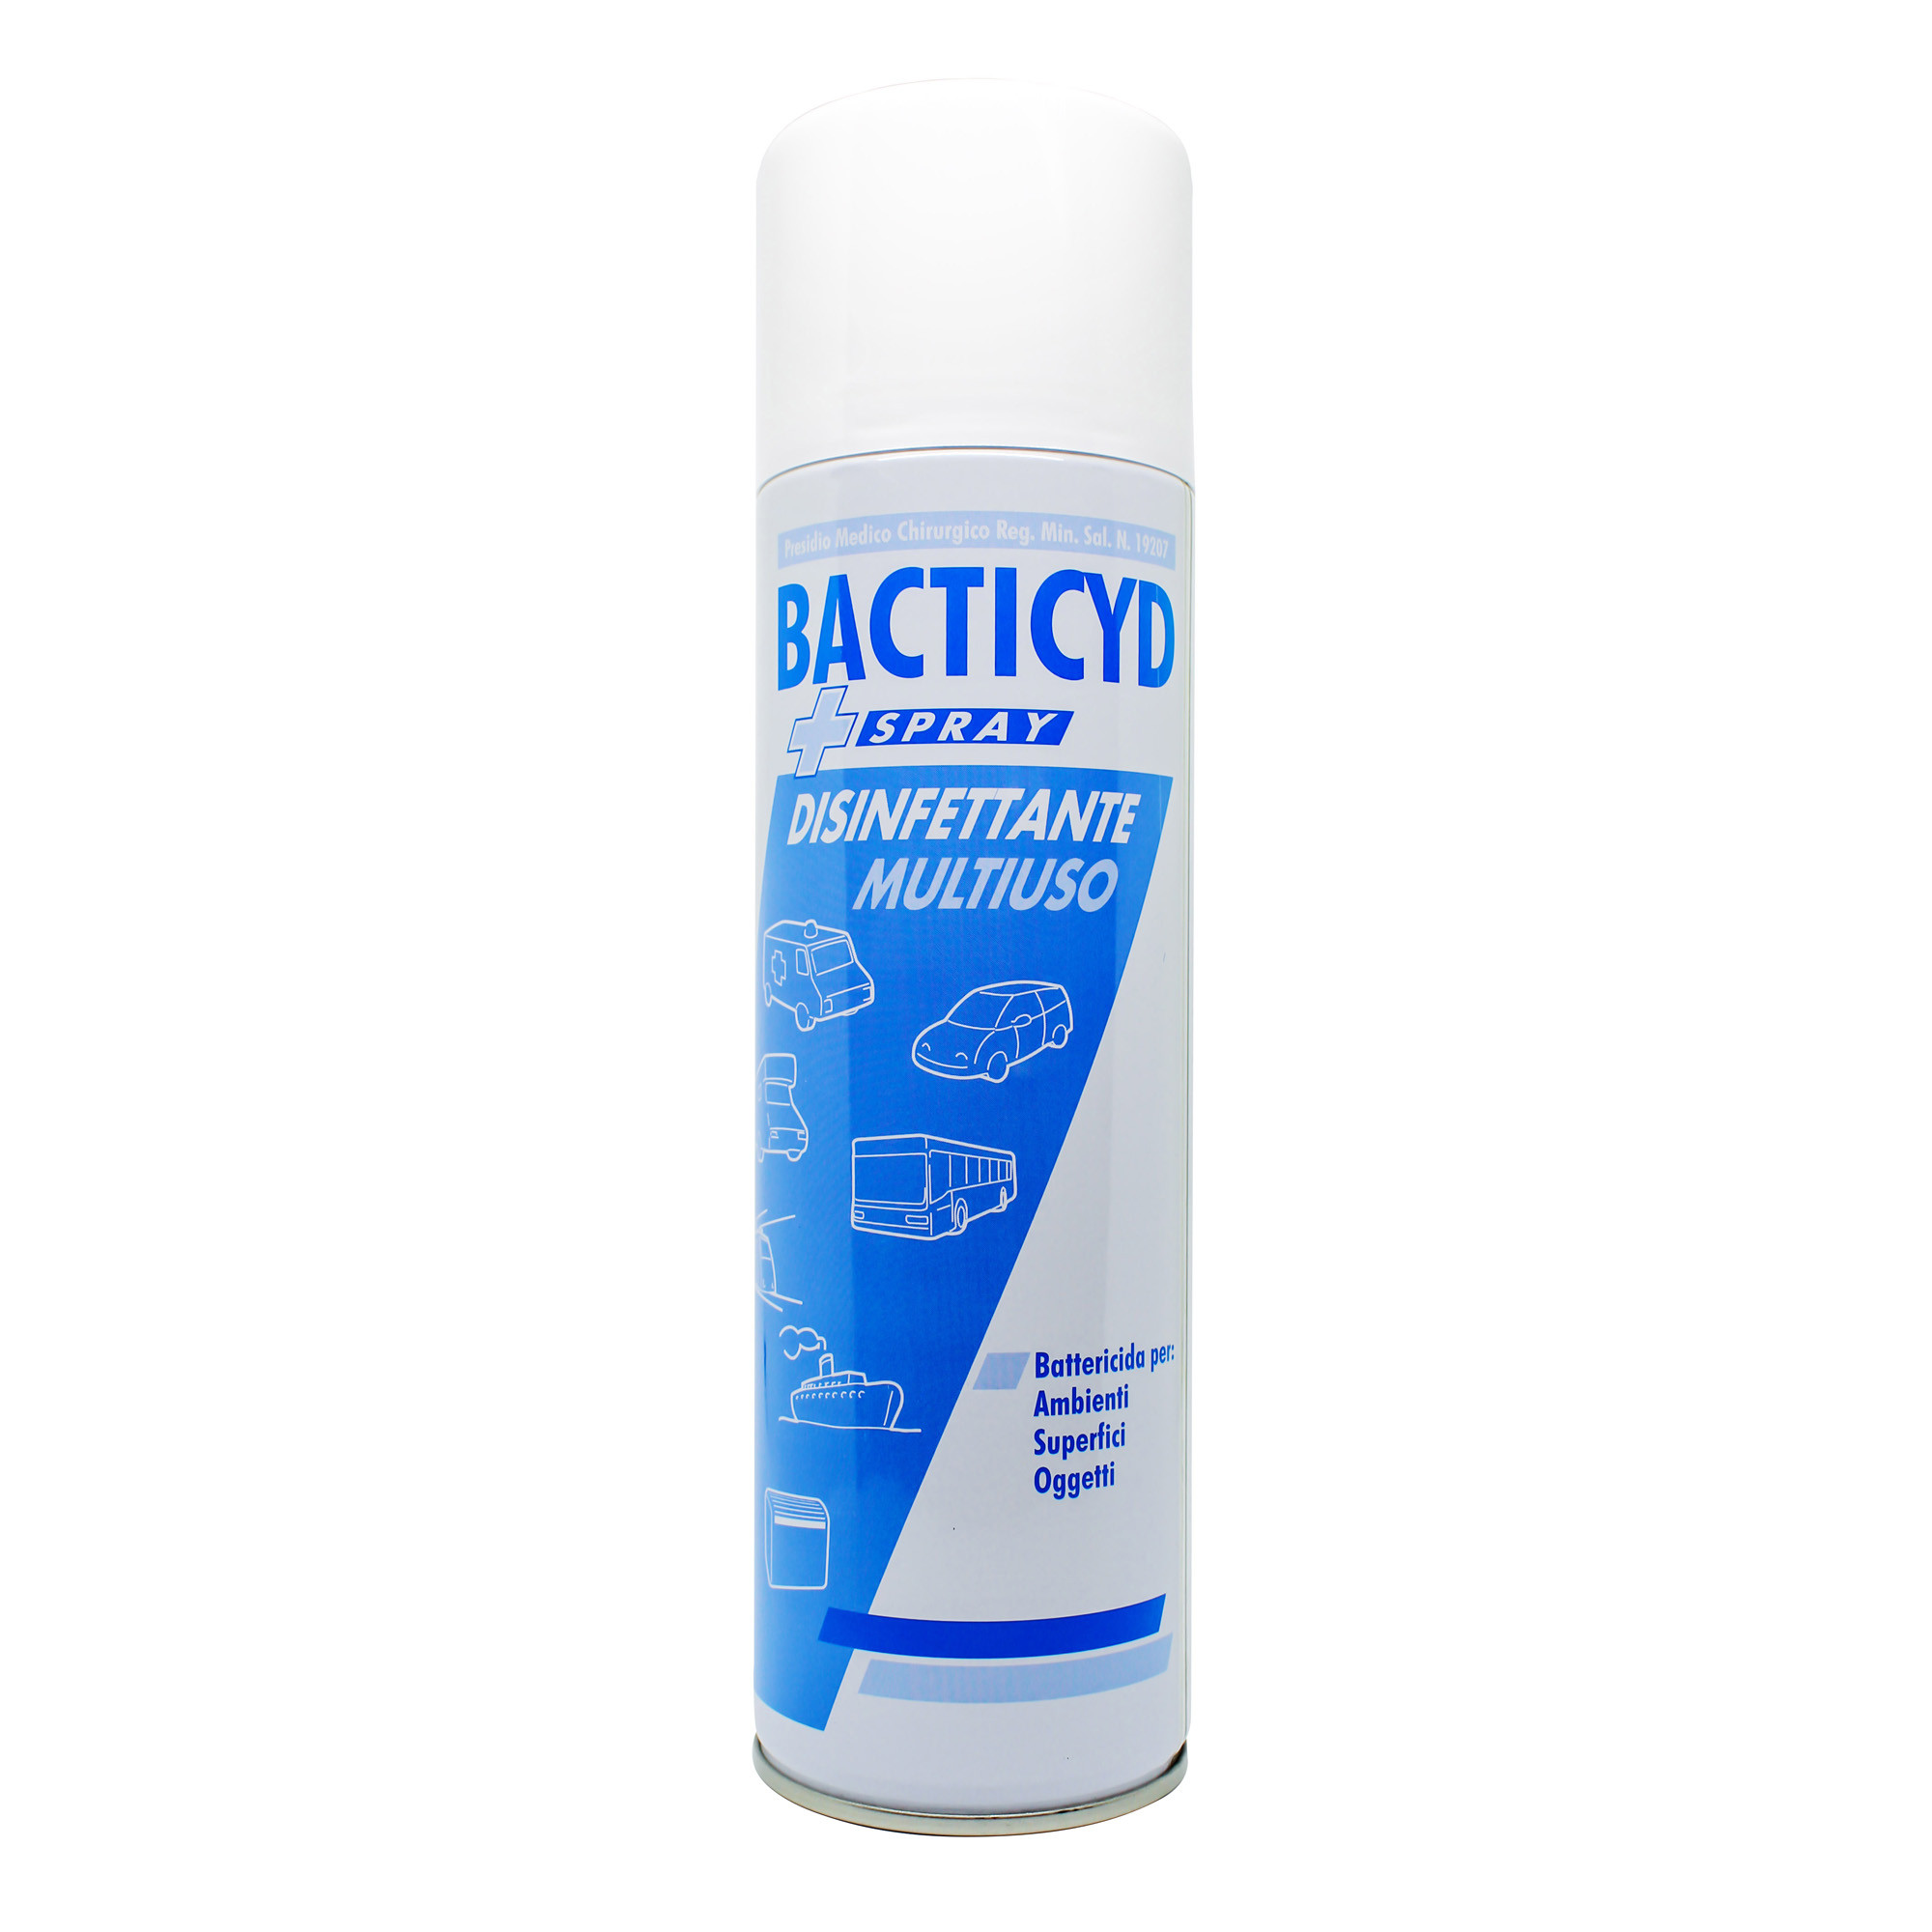 Disinfettante multiuso ambienti professionali antibatterico e deodorante Bacticyd Spray 500ml